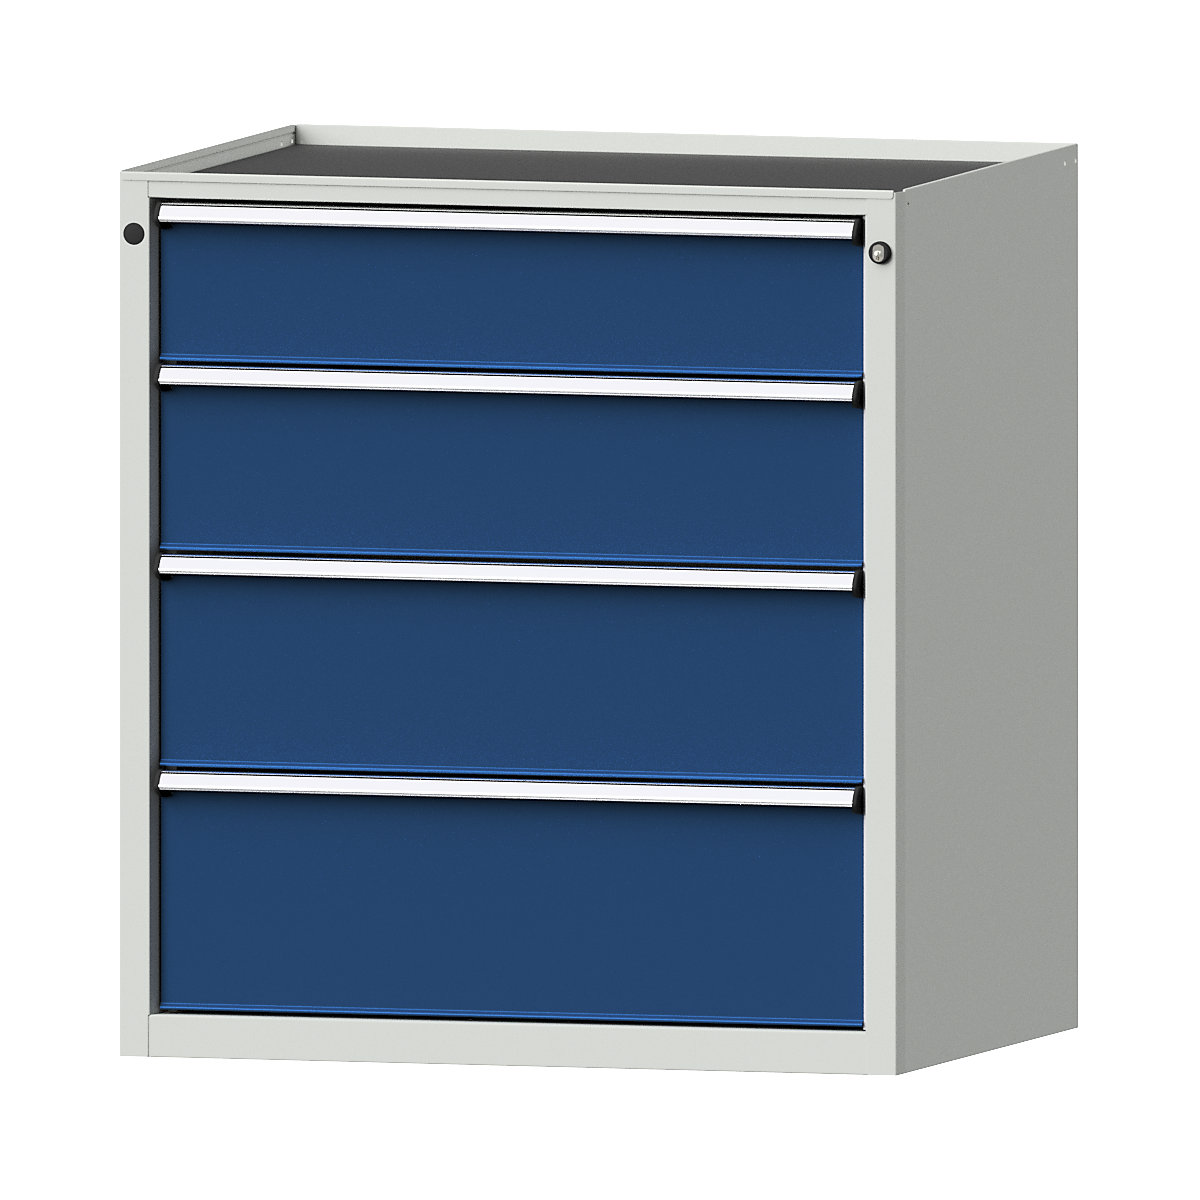 Zásuvková skříň – ANKE, š x h 910 x 675 mm, nosnost zásuvky 200 kg, 4 zásuvky, výška 980 mm, čelo hořcově modré